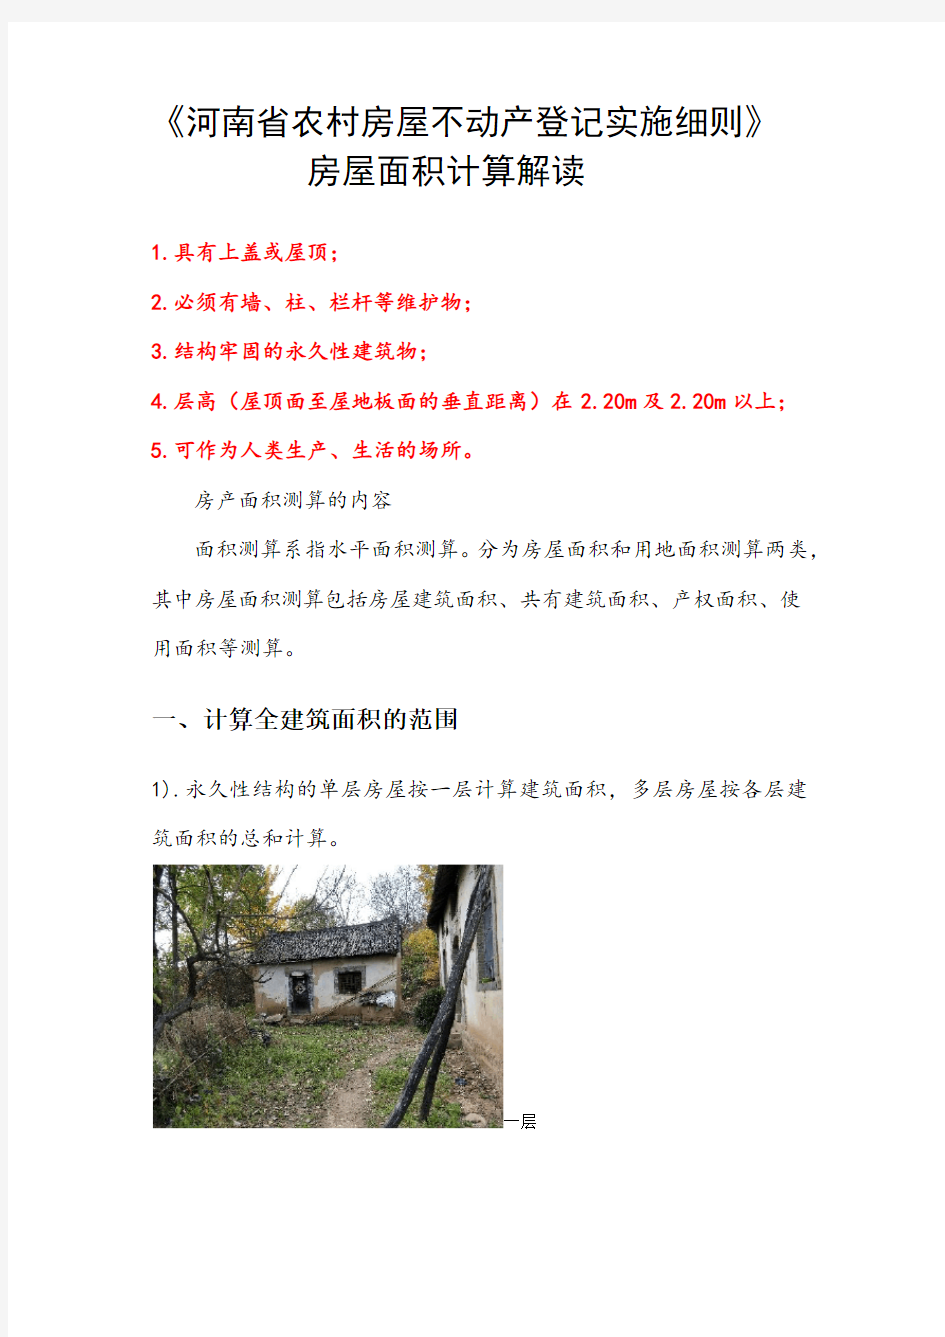 河南省农村房屋不动产登记实施细则----房屋面积计算图解(1)